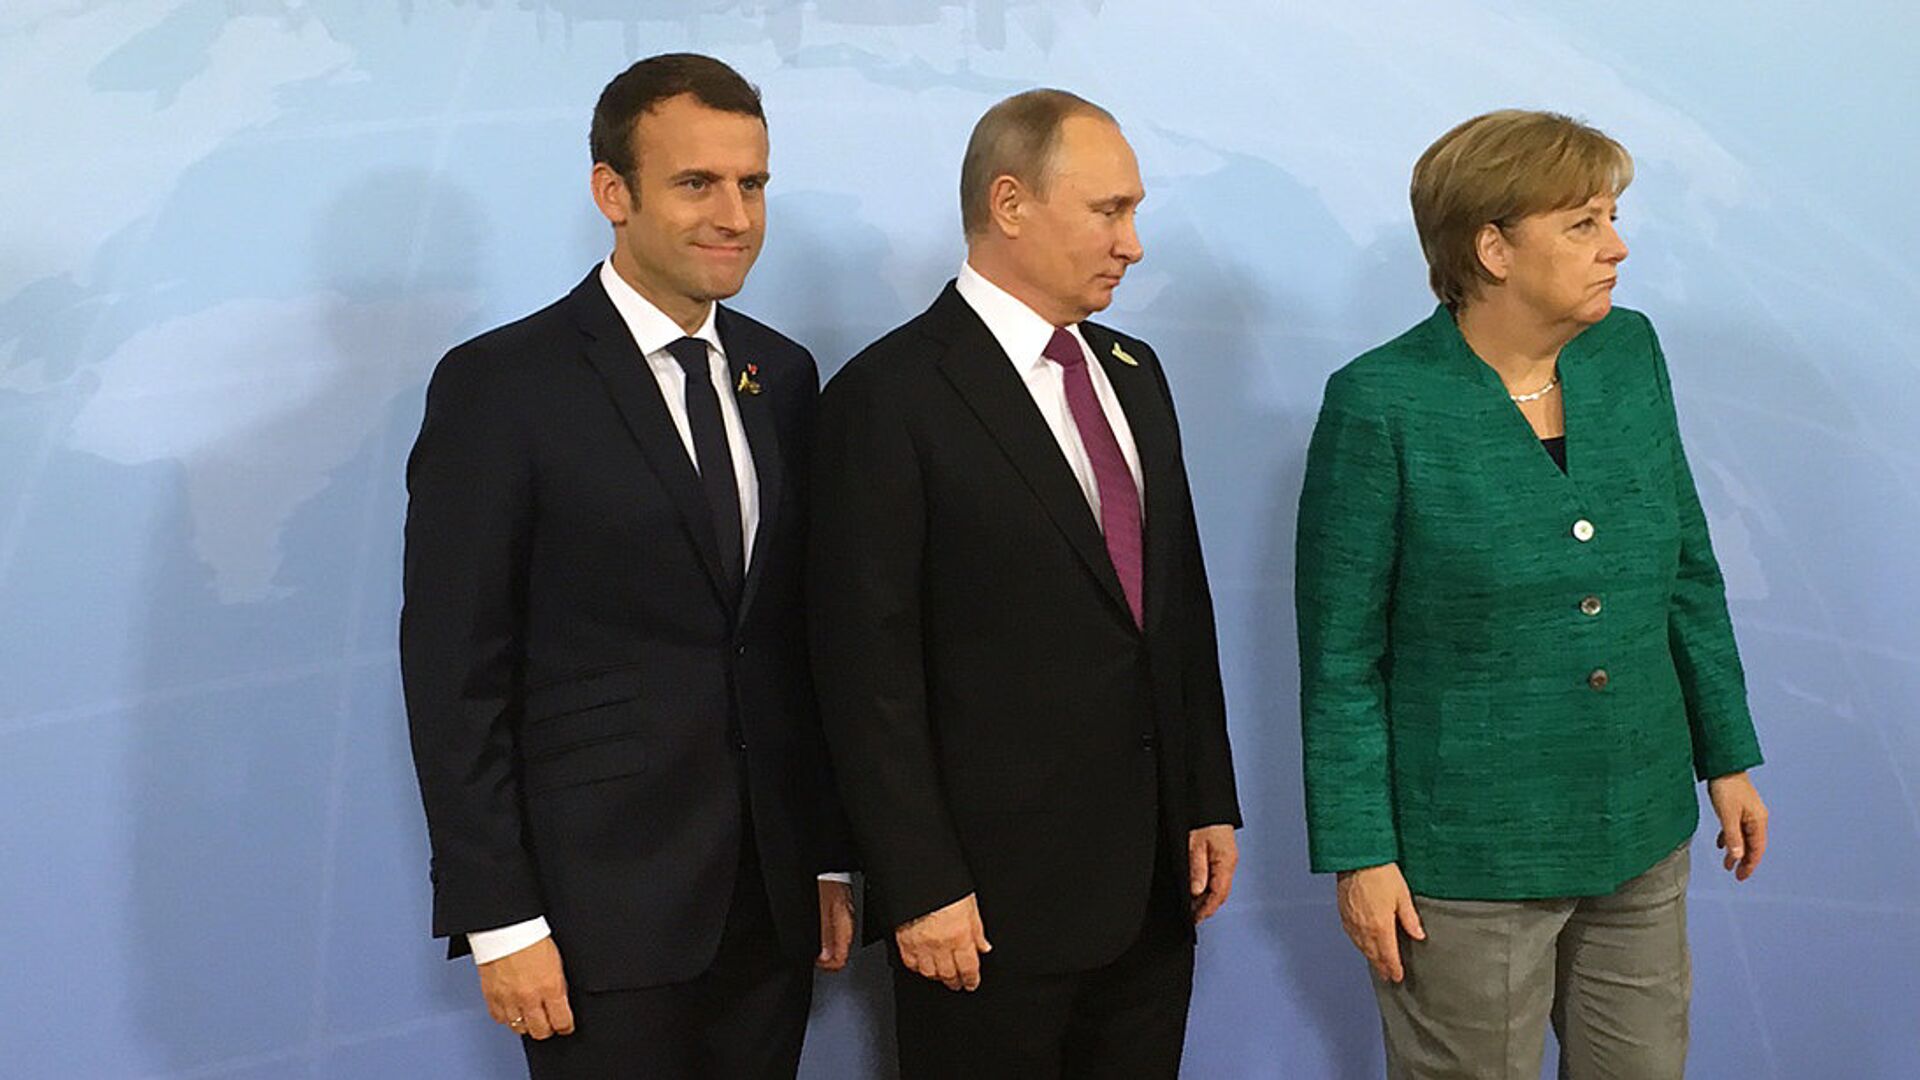 Президент России Владимир Путин, канцлер ФРГ Ангела Меркель и президент Франции Эммануэль Макрон во время встречи на саммите G20 в Гамбурге. 8 июля 2017 - ИноСМИ, 1920, 24.06.2021